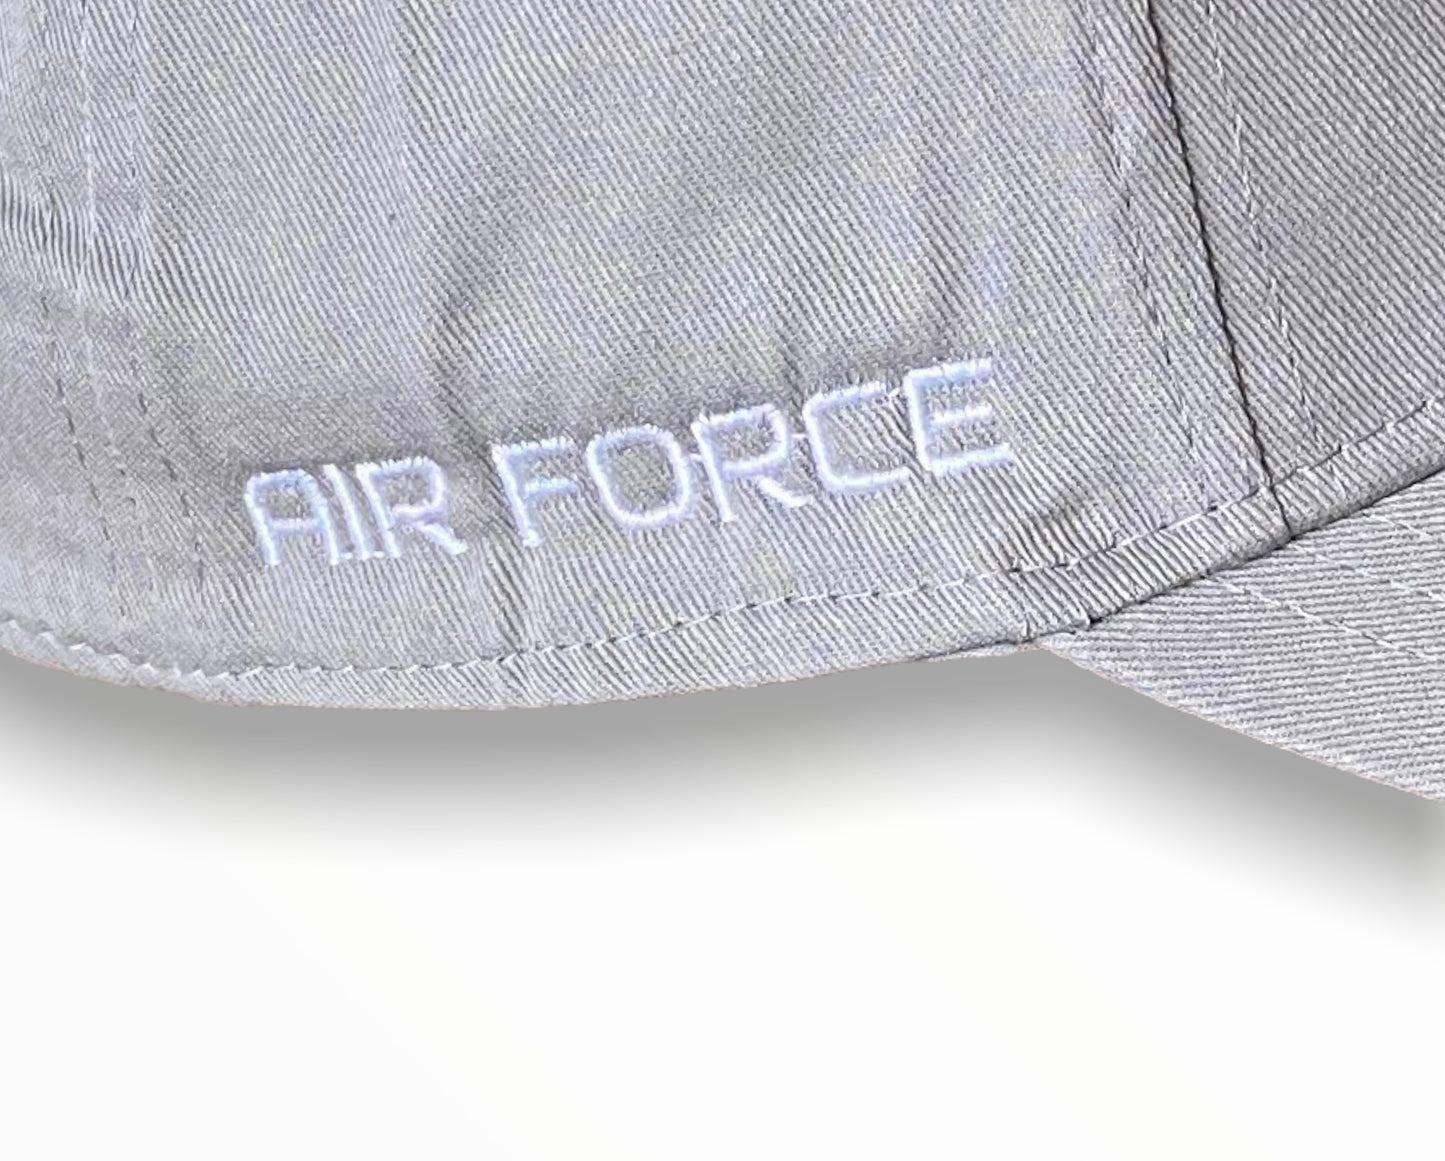 Air Force W♡man Veteran